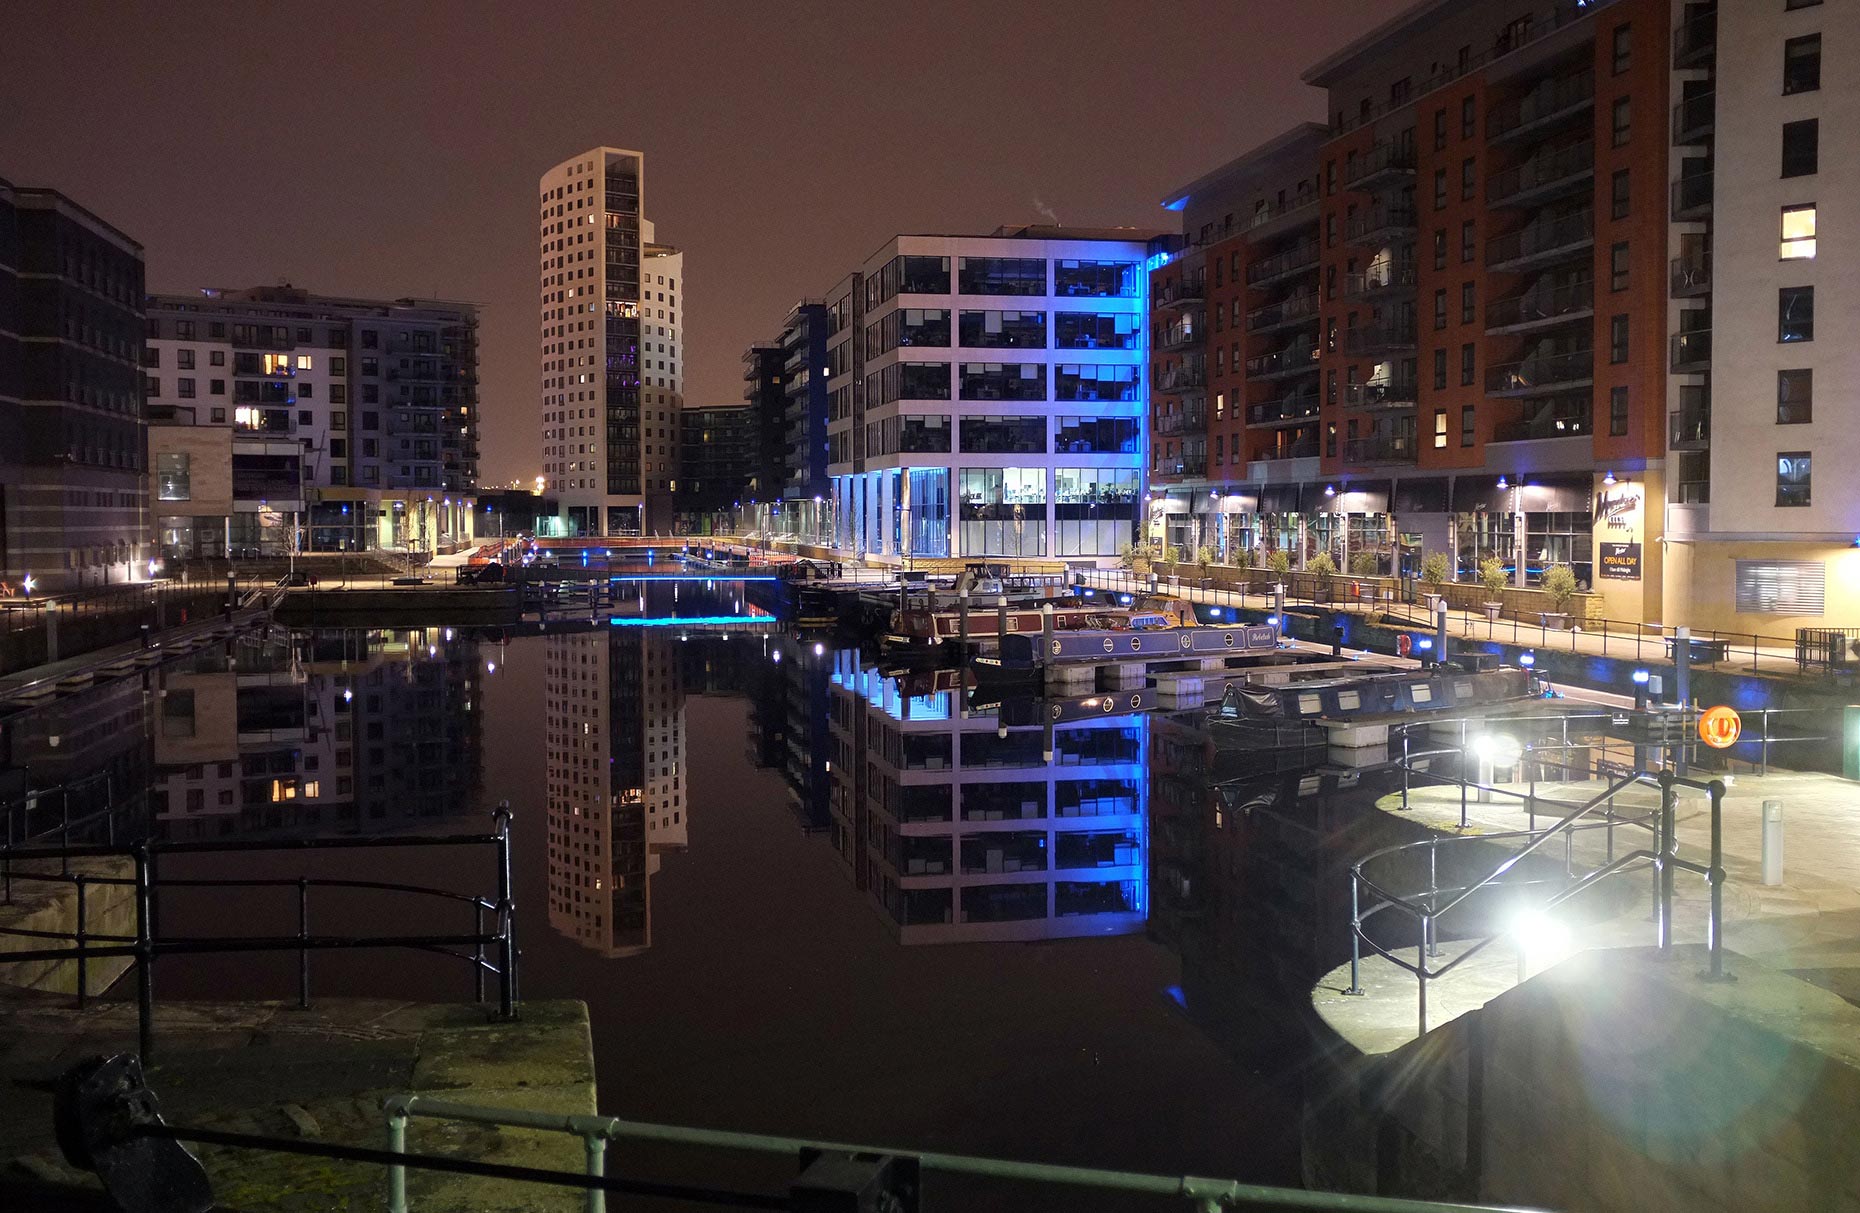 Cities at Night - Leeds